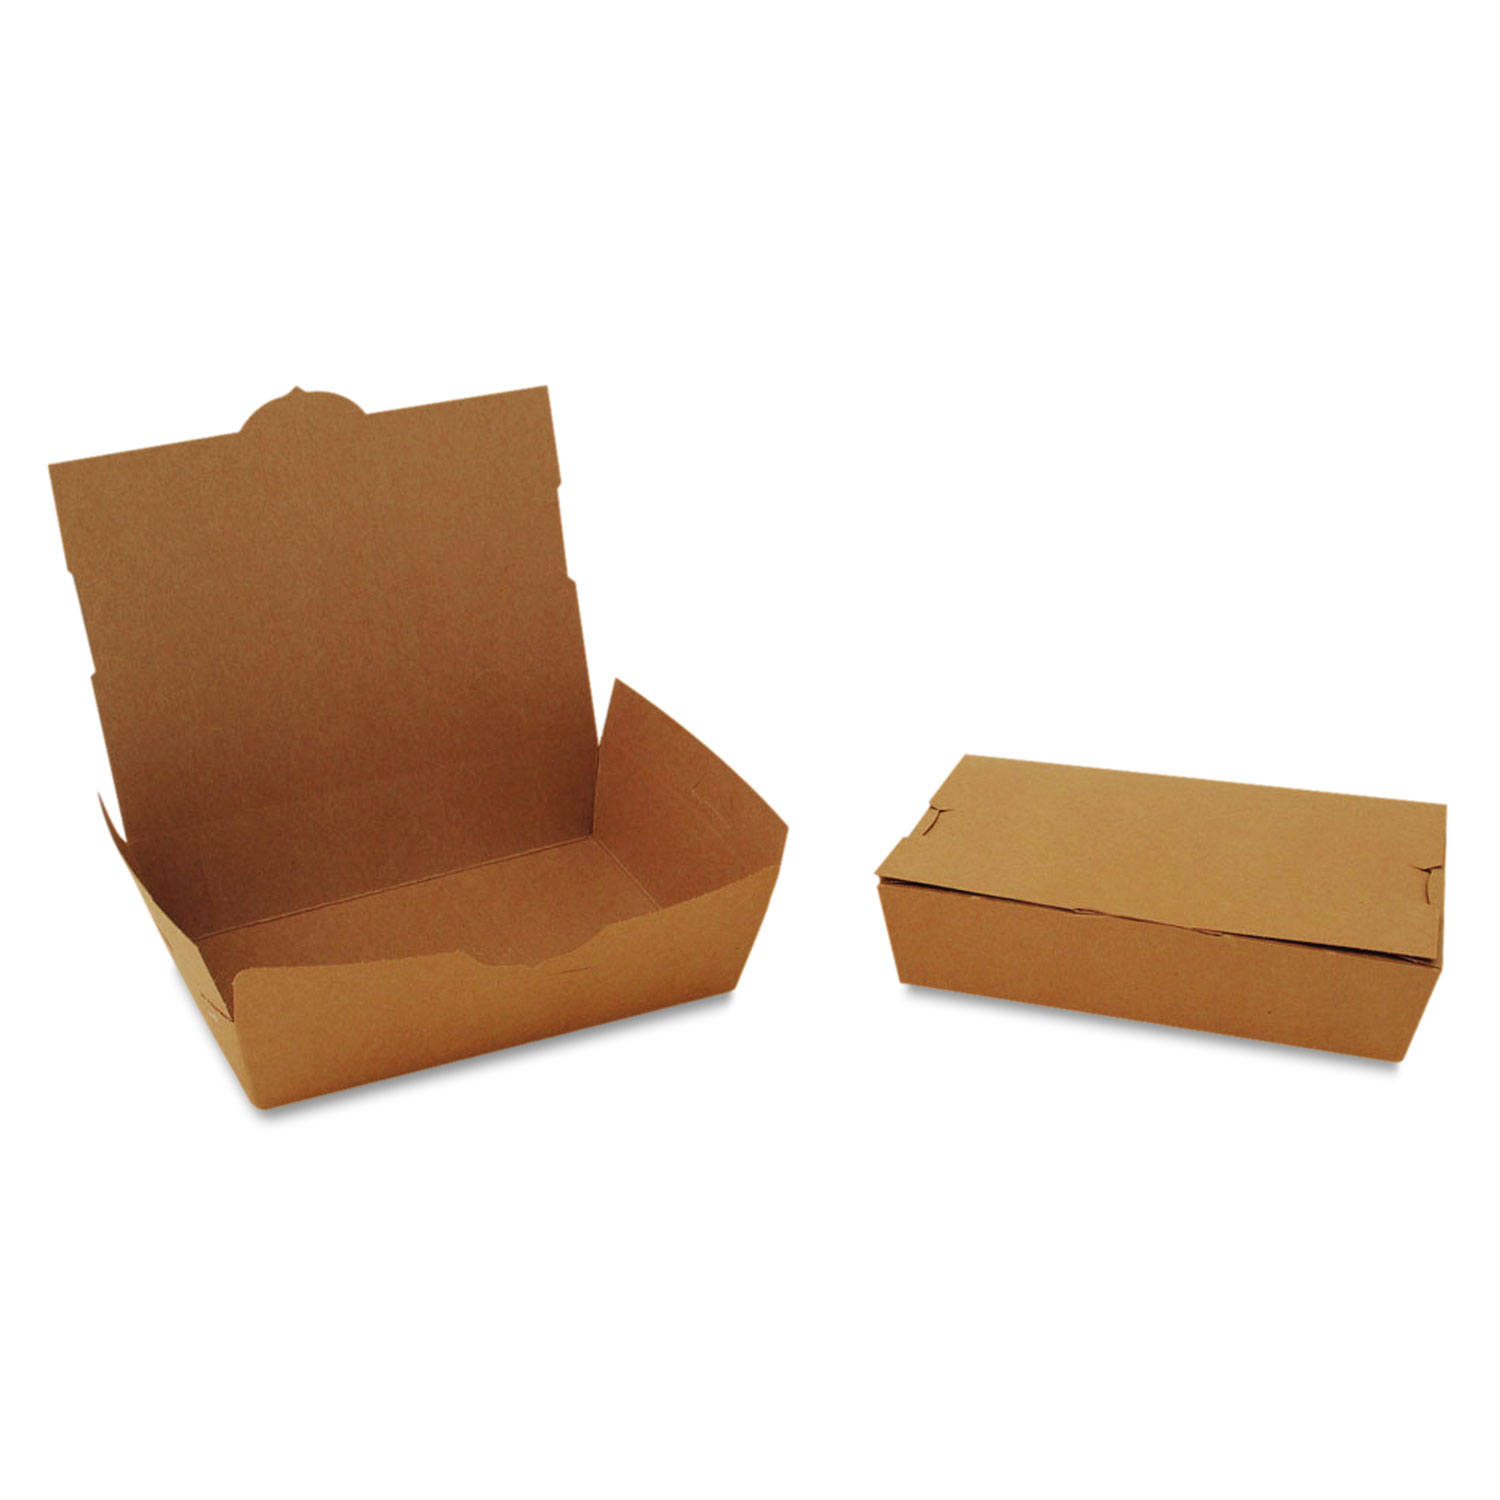 ChampPak Carryout Boxes, 2lb, 7 3/4w x 5 1/2d x 1 7/8h, Brown, 200/Carton